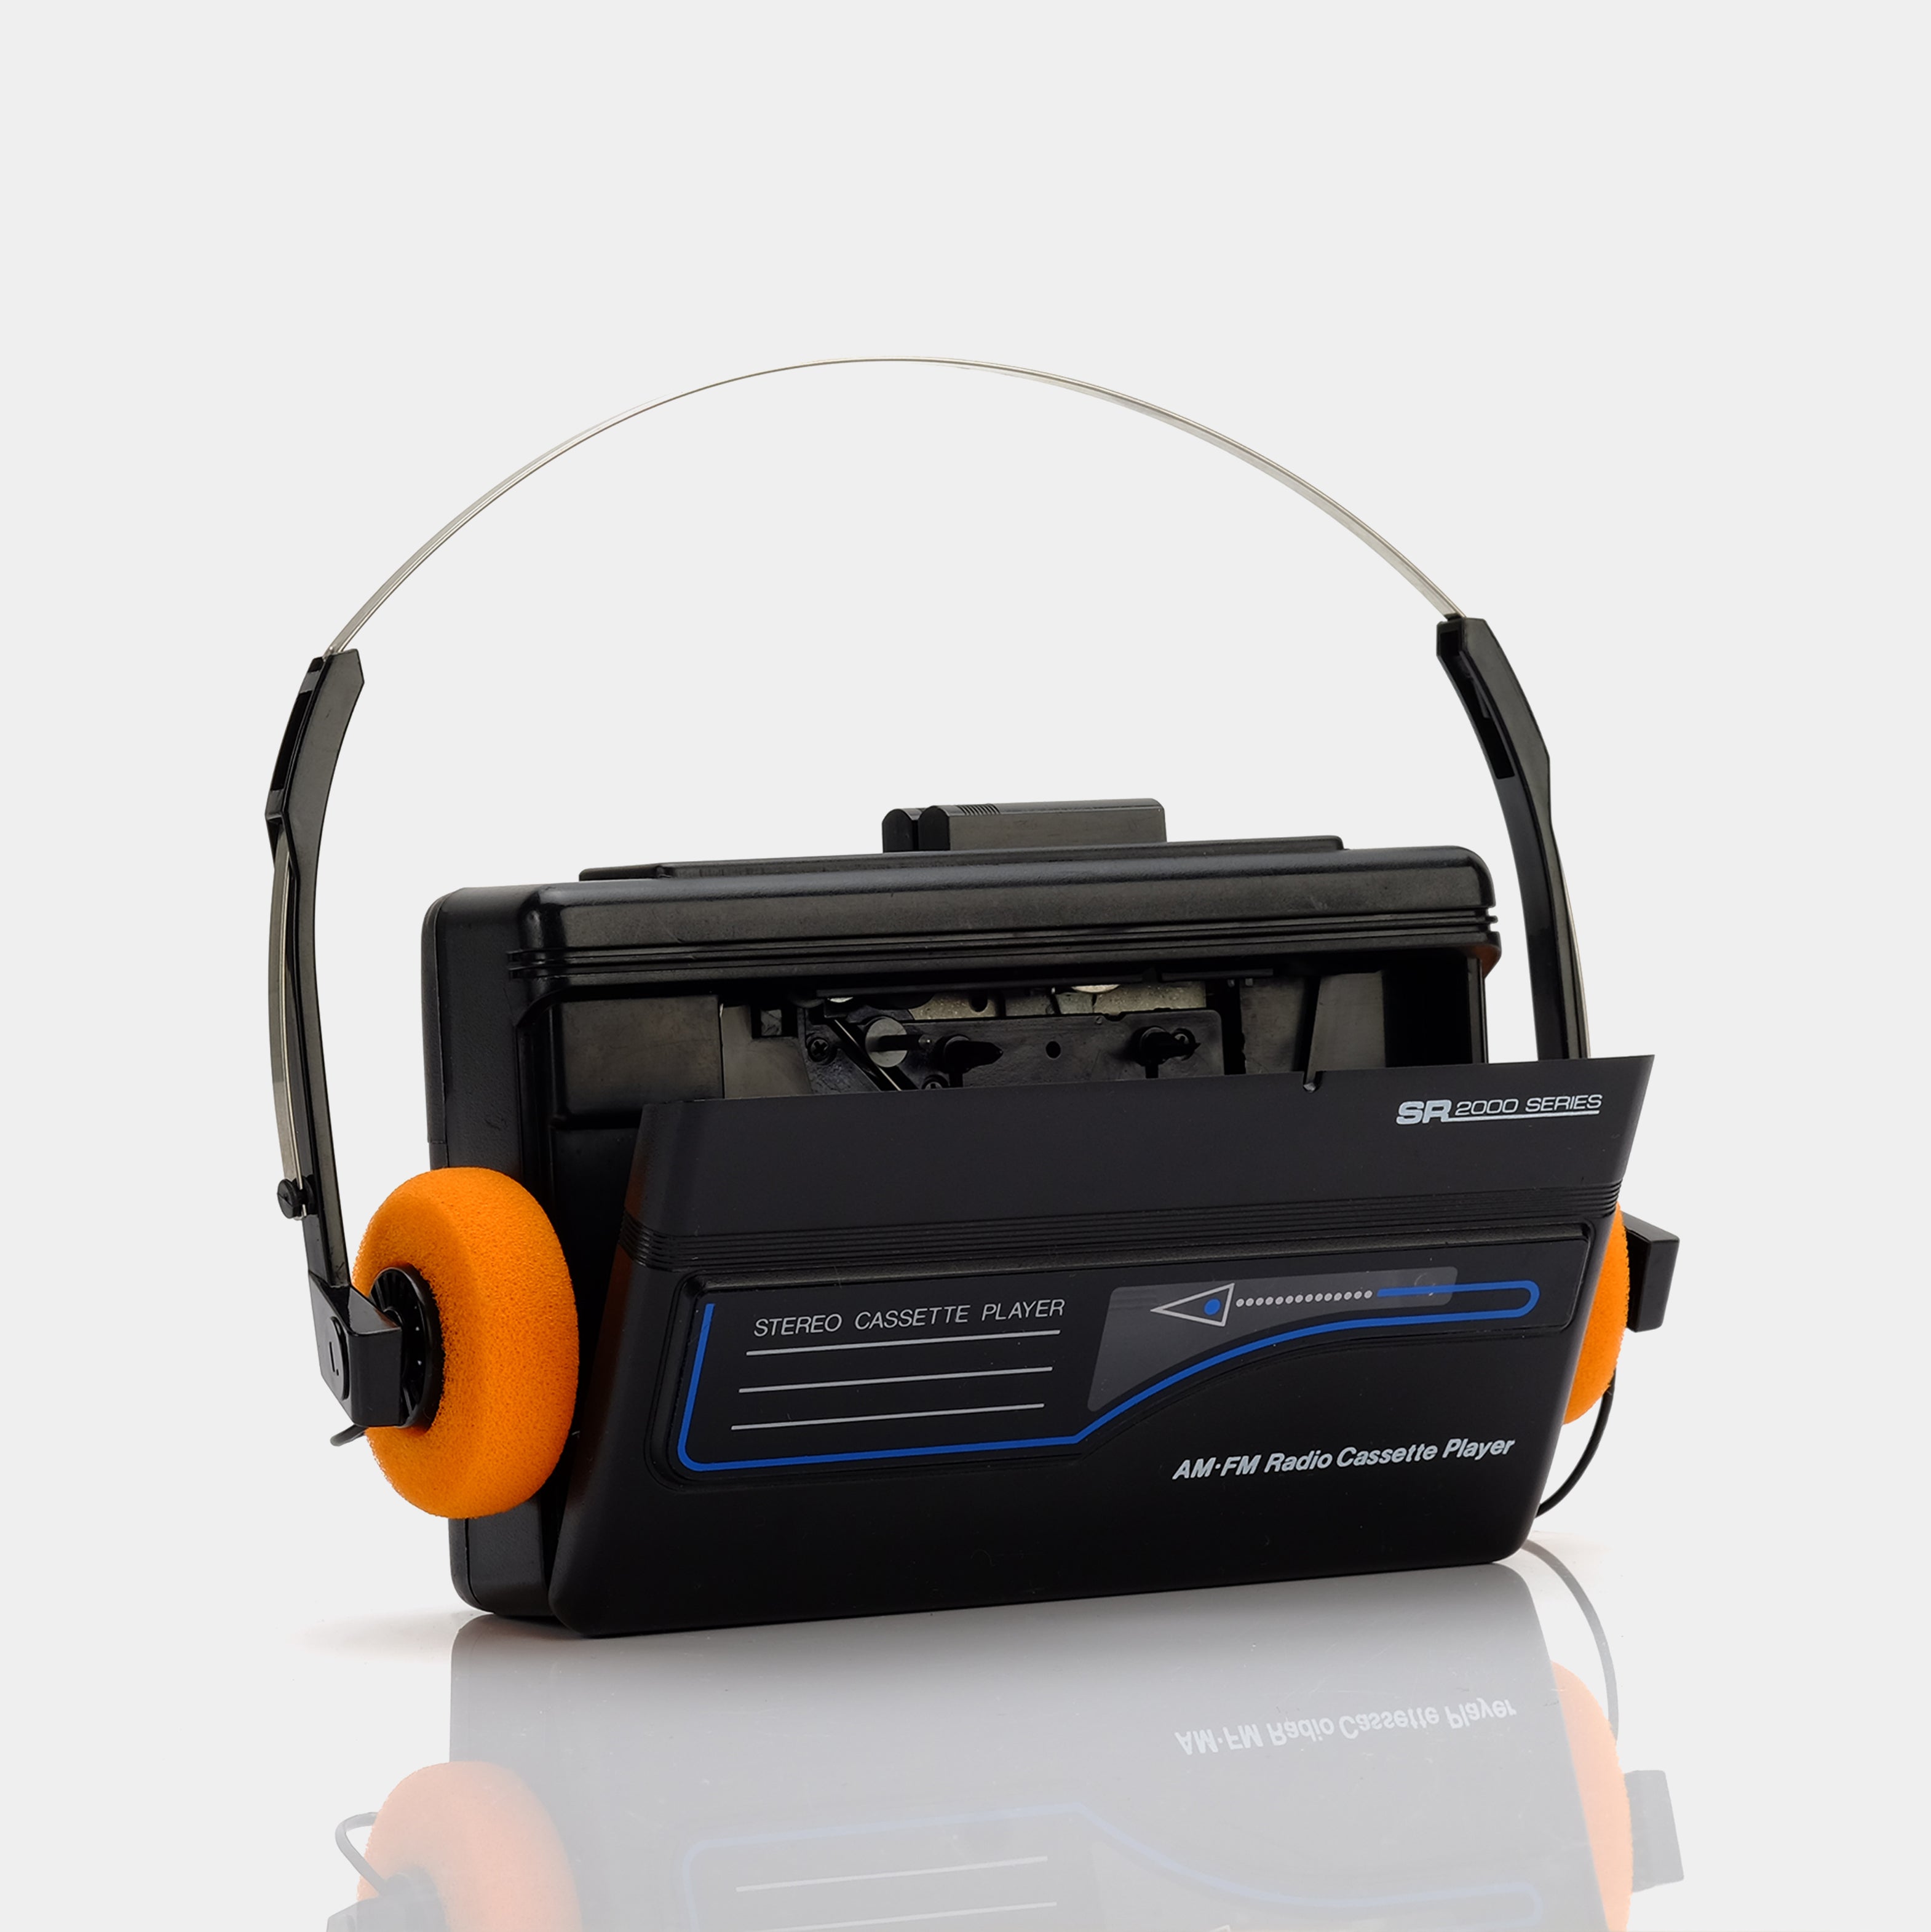 SR 2000 Series AM/FM Portable Cassette Player